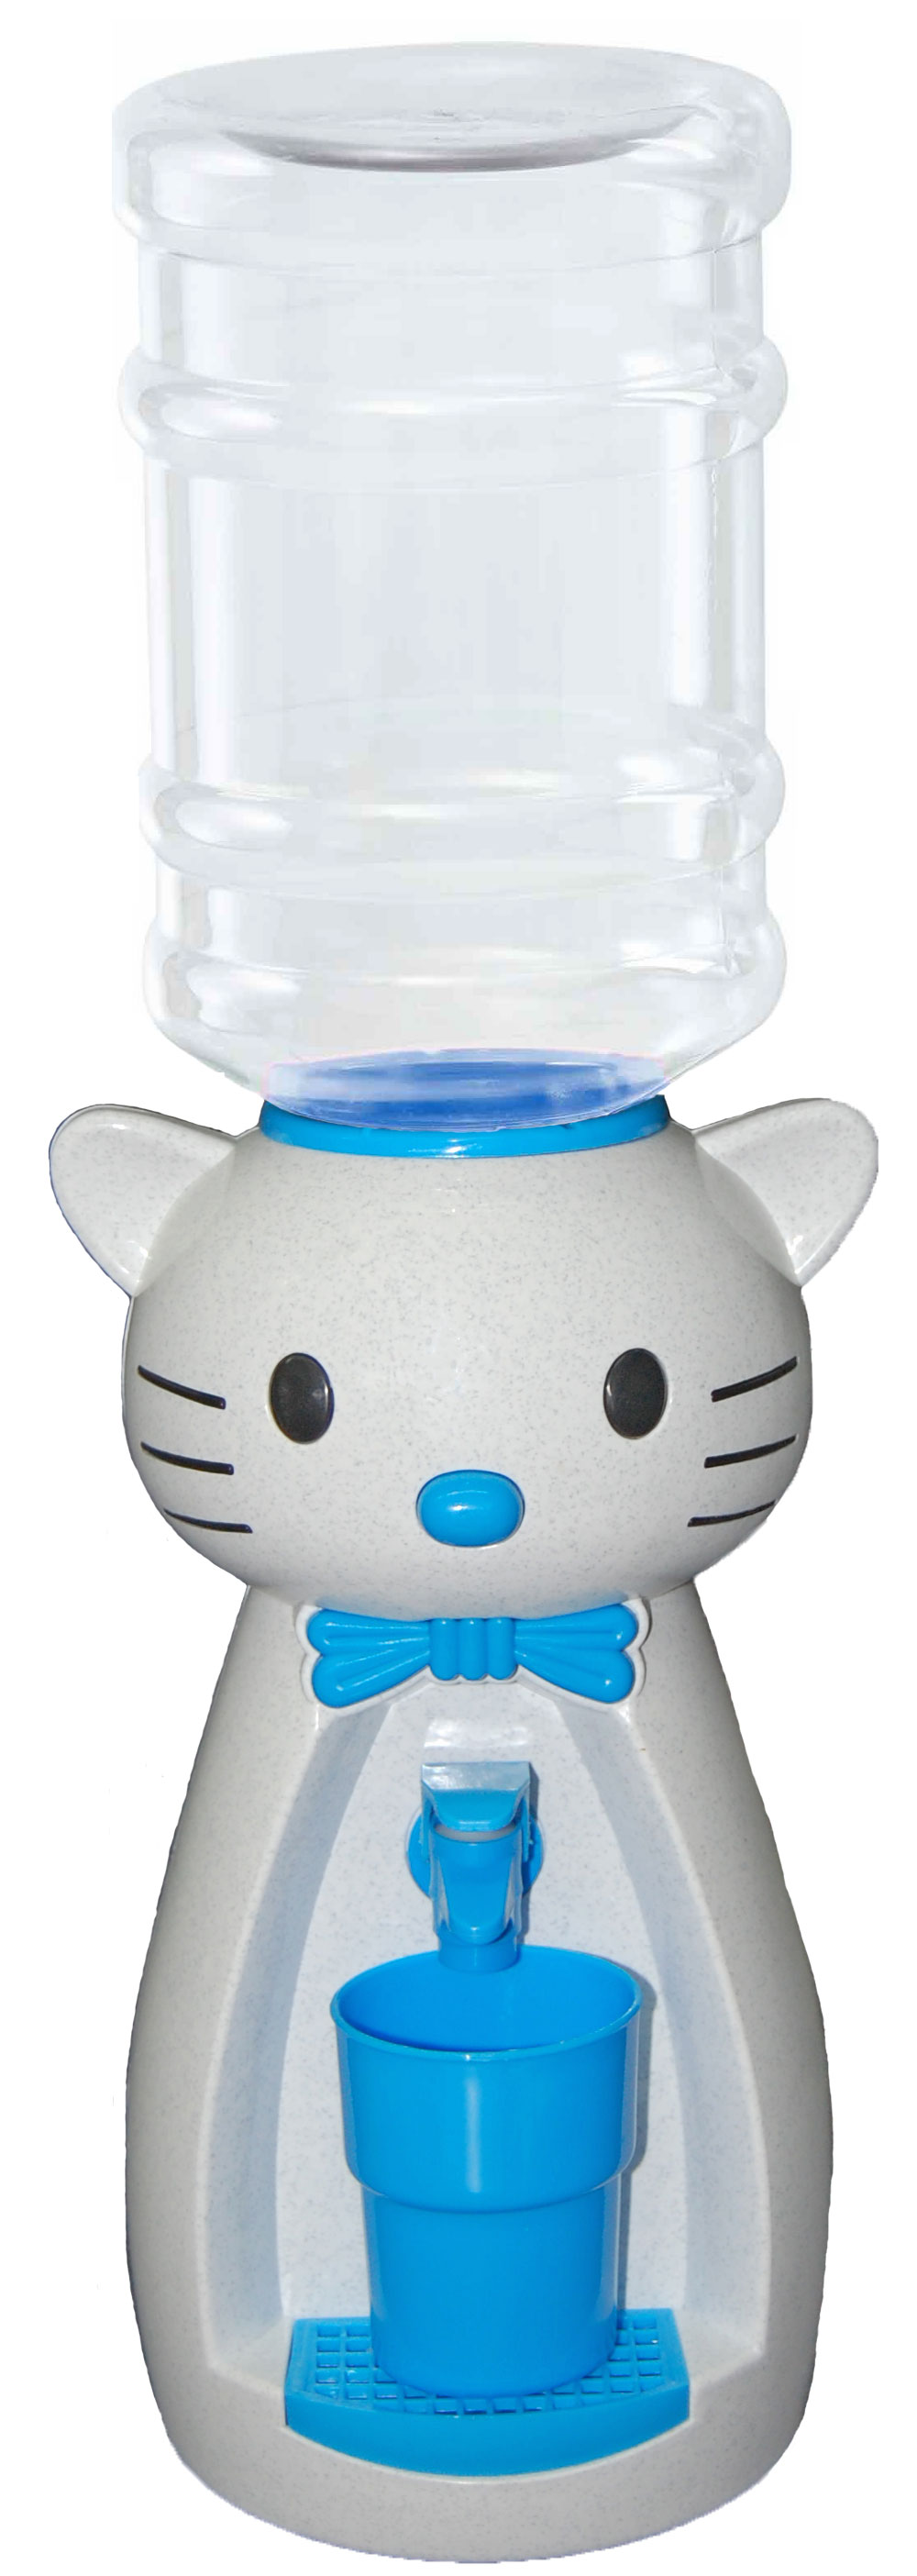 Детский кулер для воды VATTEN kids Kitty marble white по доступной цене в Москве от магазина "Море Воды"